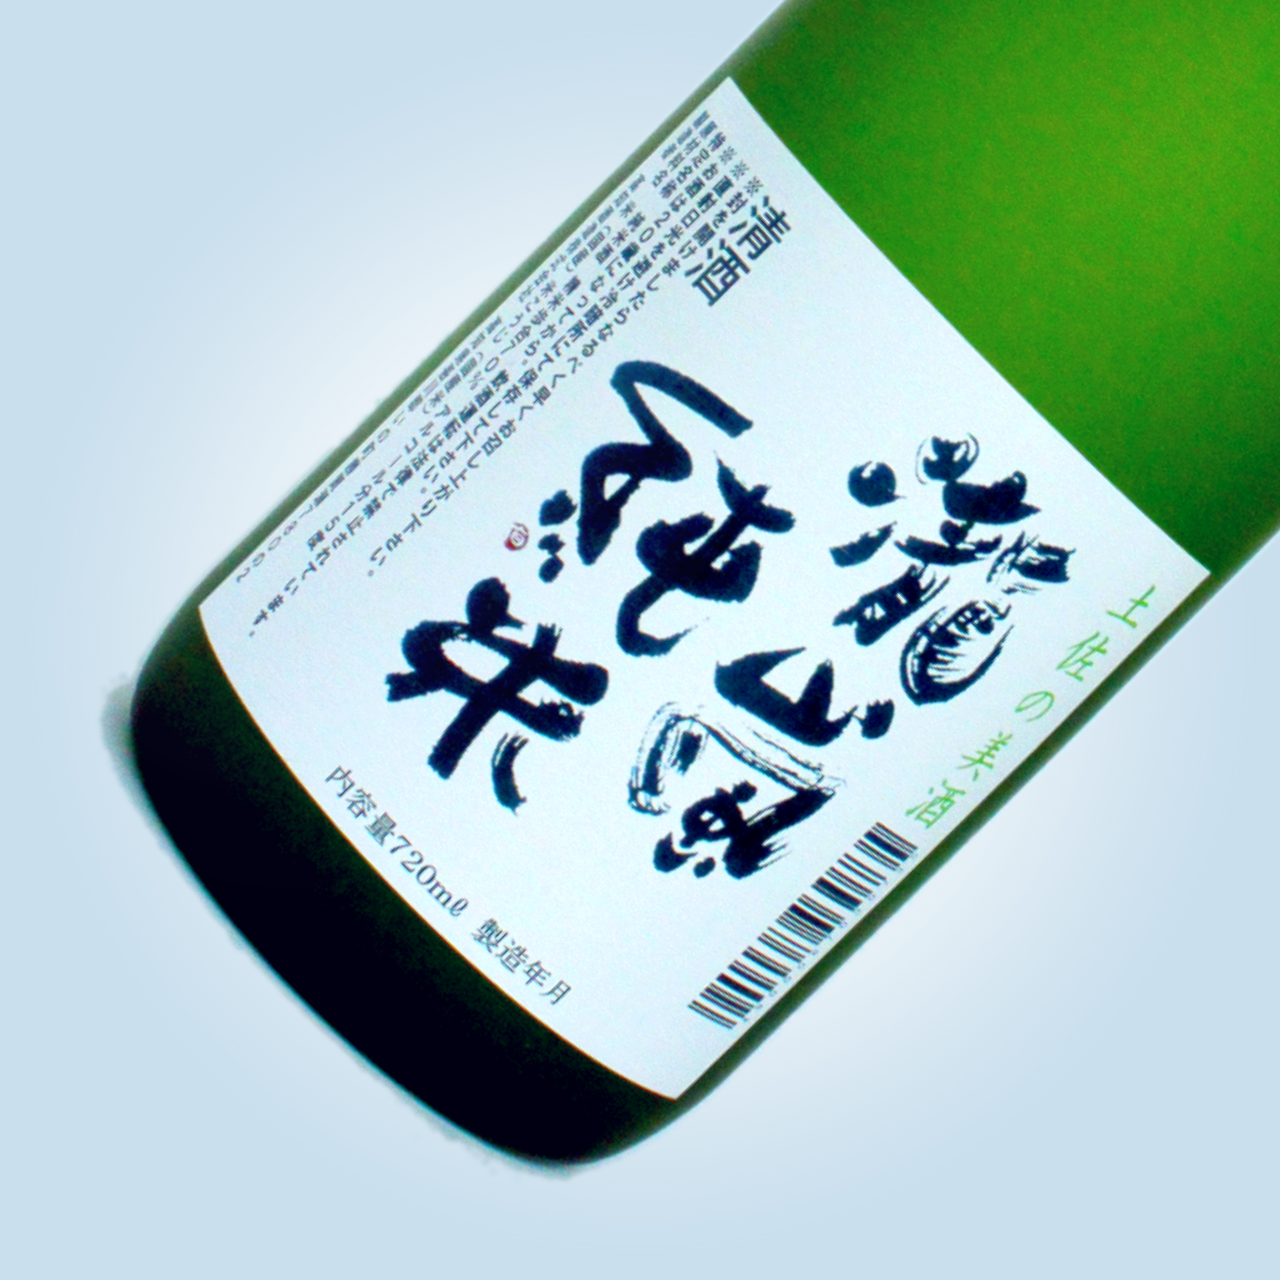 瀧嵐 純米酒 720ml